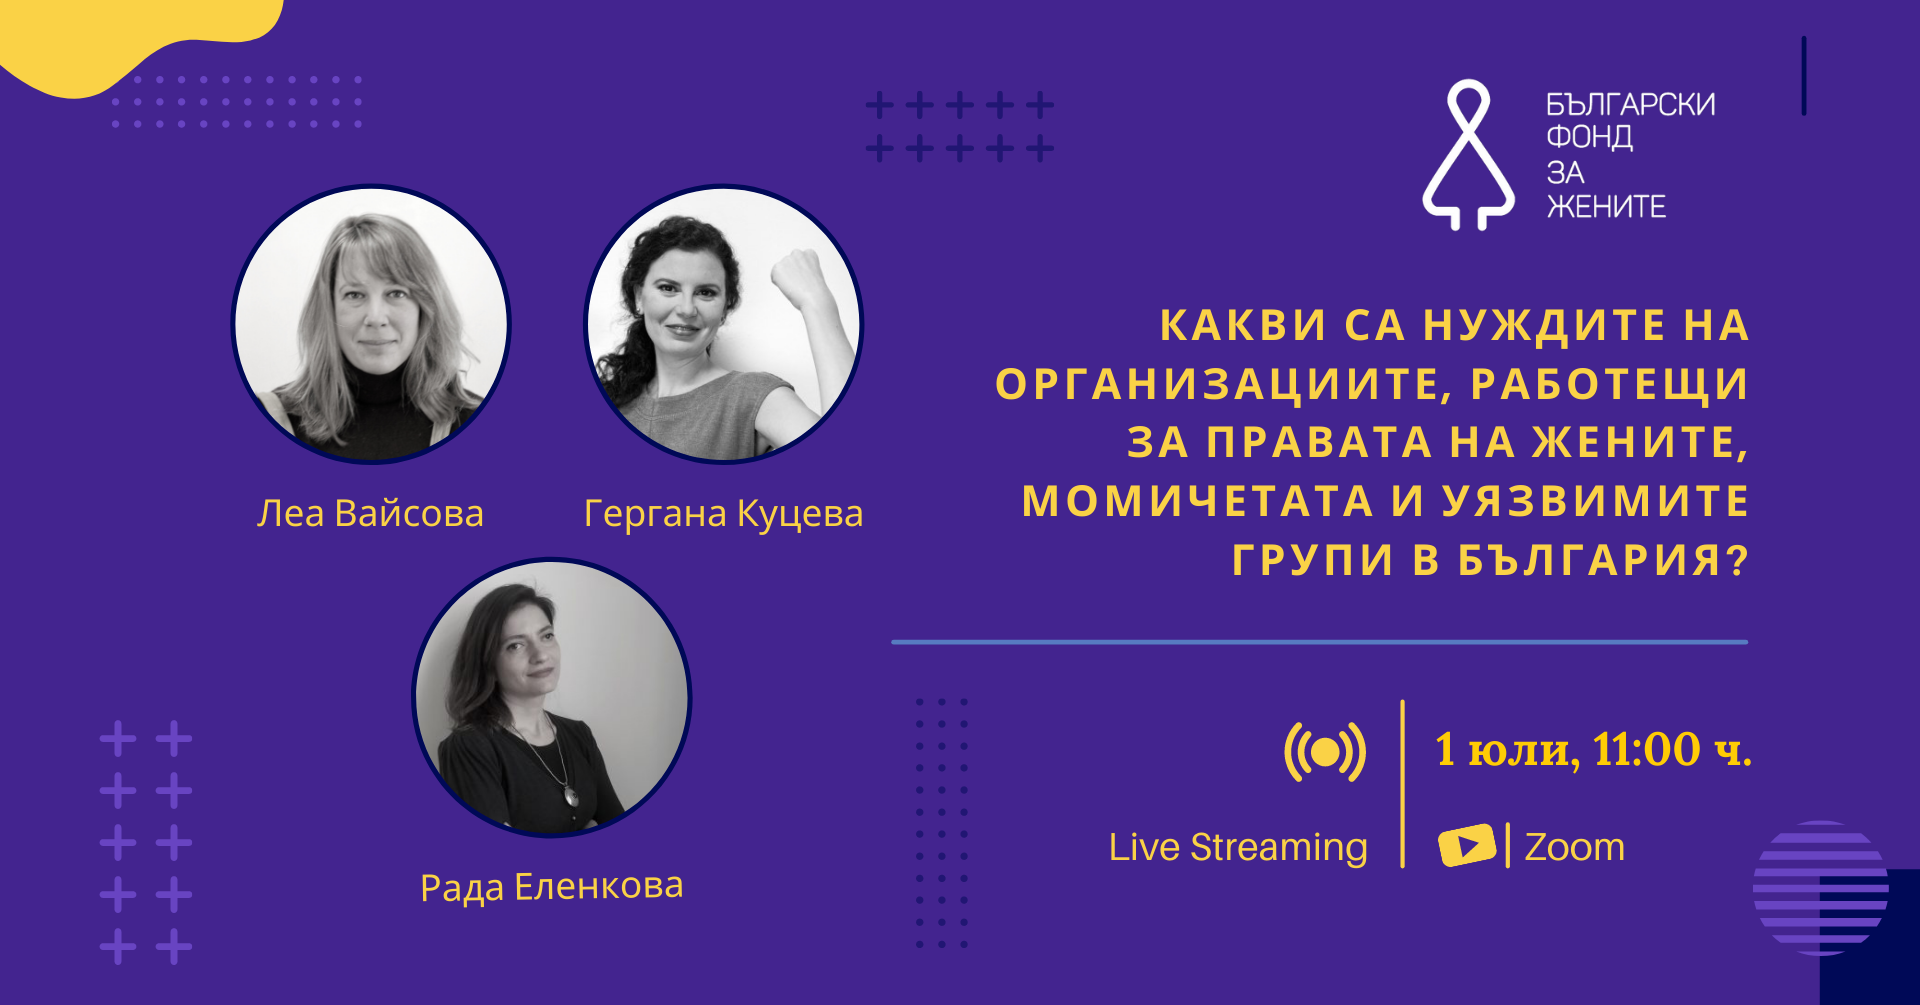 Представяне на изследване на Български фонд за жените